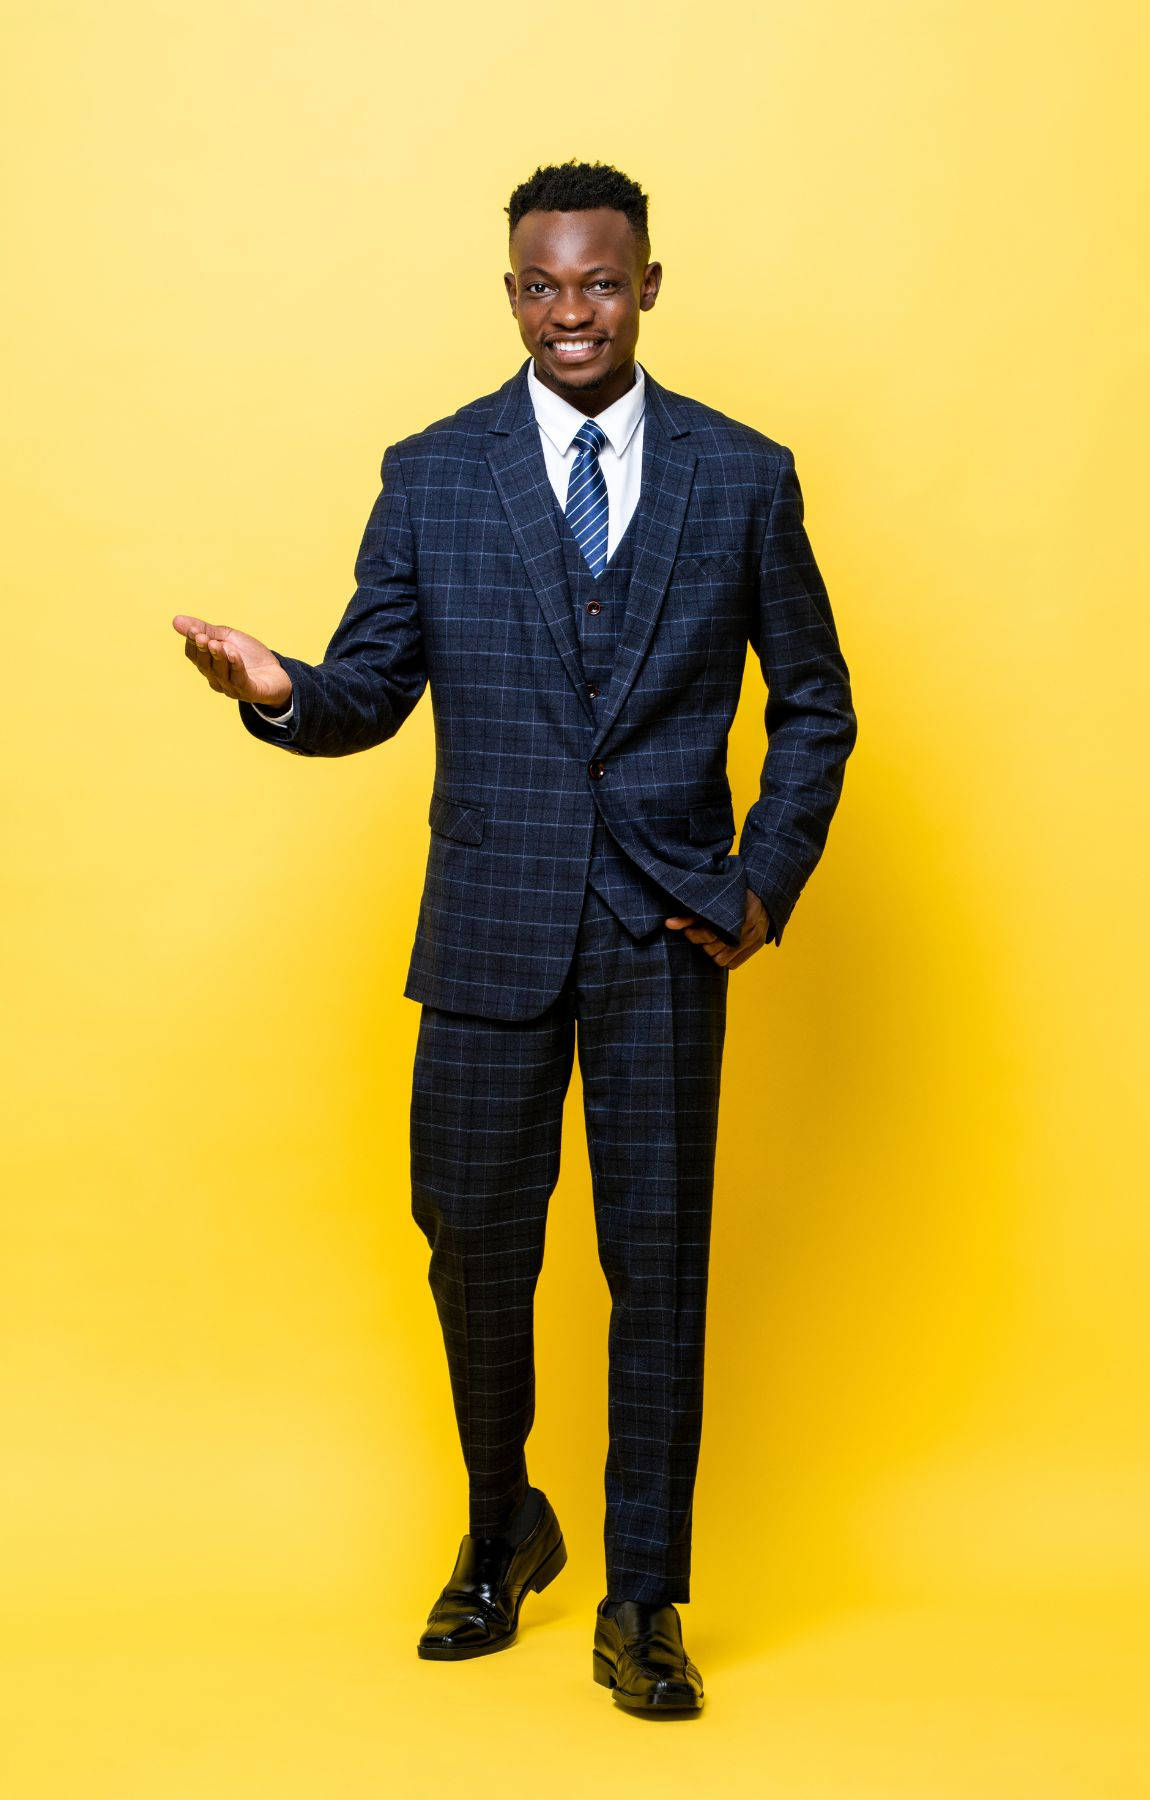 African Man In Suit&Tie Wallpaper